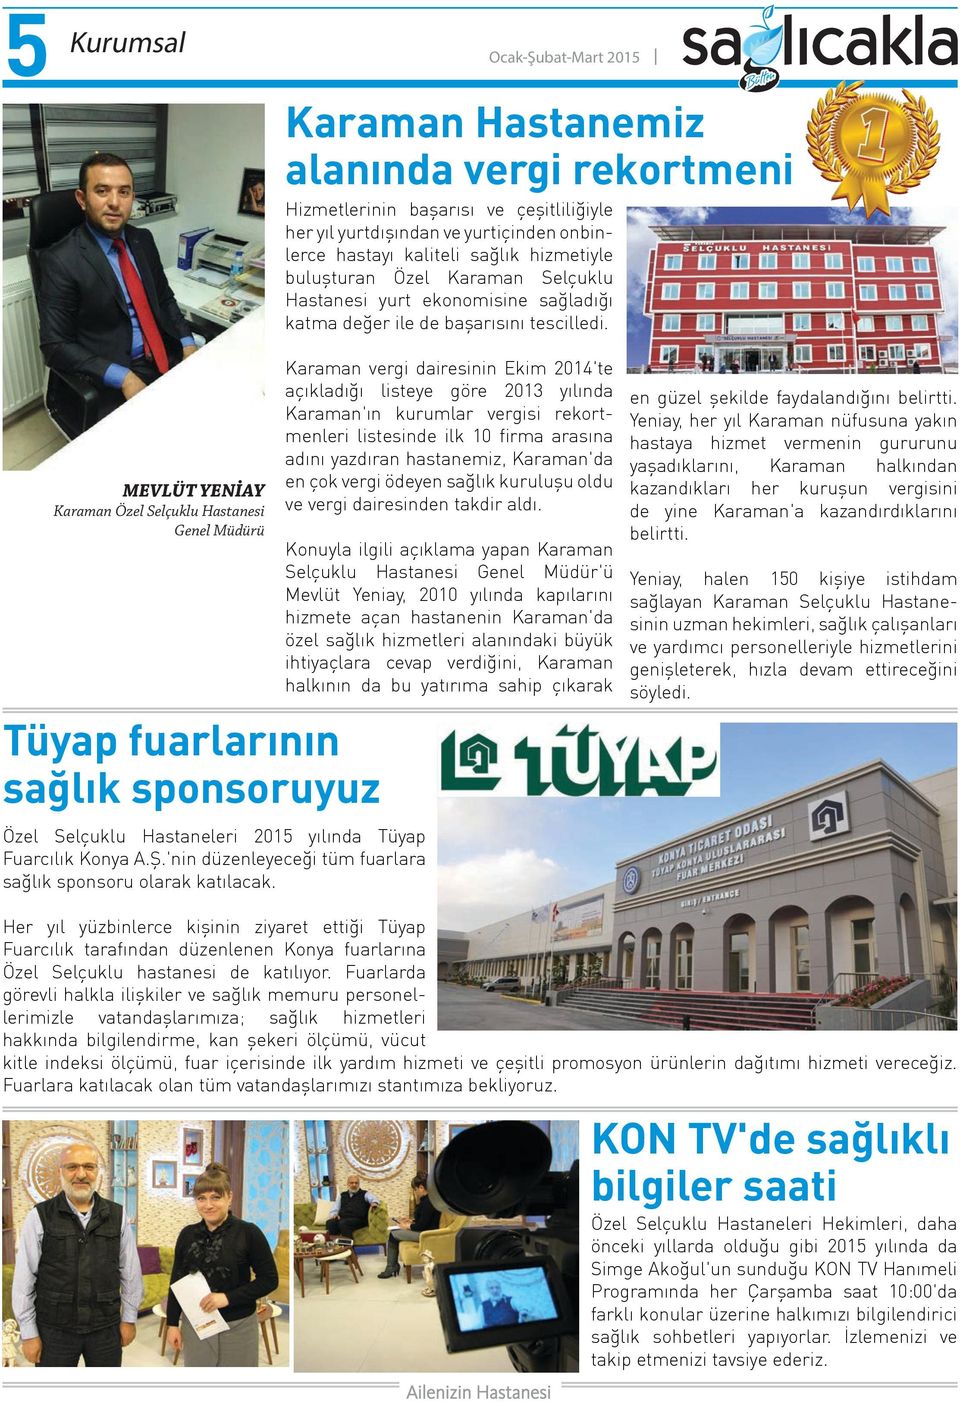 MEVLÜT YENİAY Karaman Özel Selçuklu Hastanesi Genel Müdürü Karaman vergi dairesinin Ekim 2014'te açıkladığı listeye göre 2013 yılında Karaman'ın kurumlar vergisi rekortmenleri listesinde ilk 10 firma